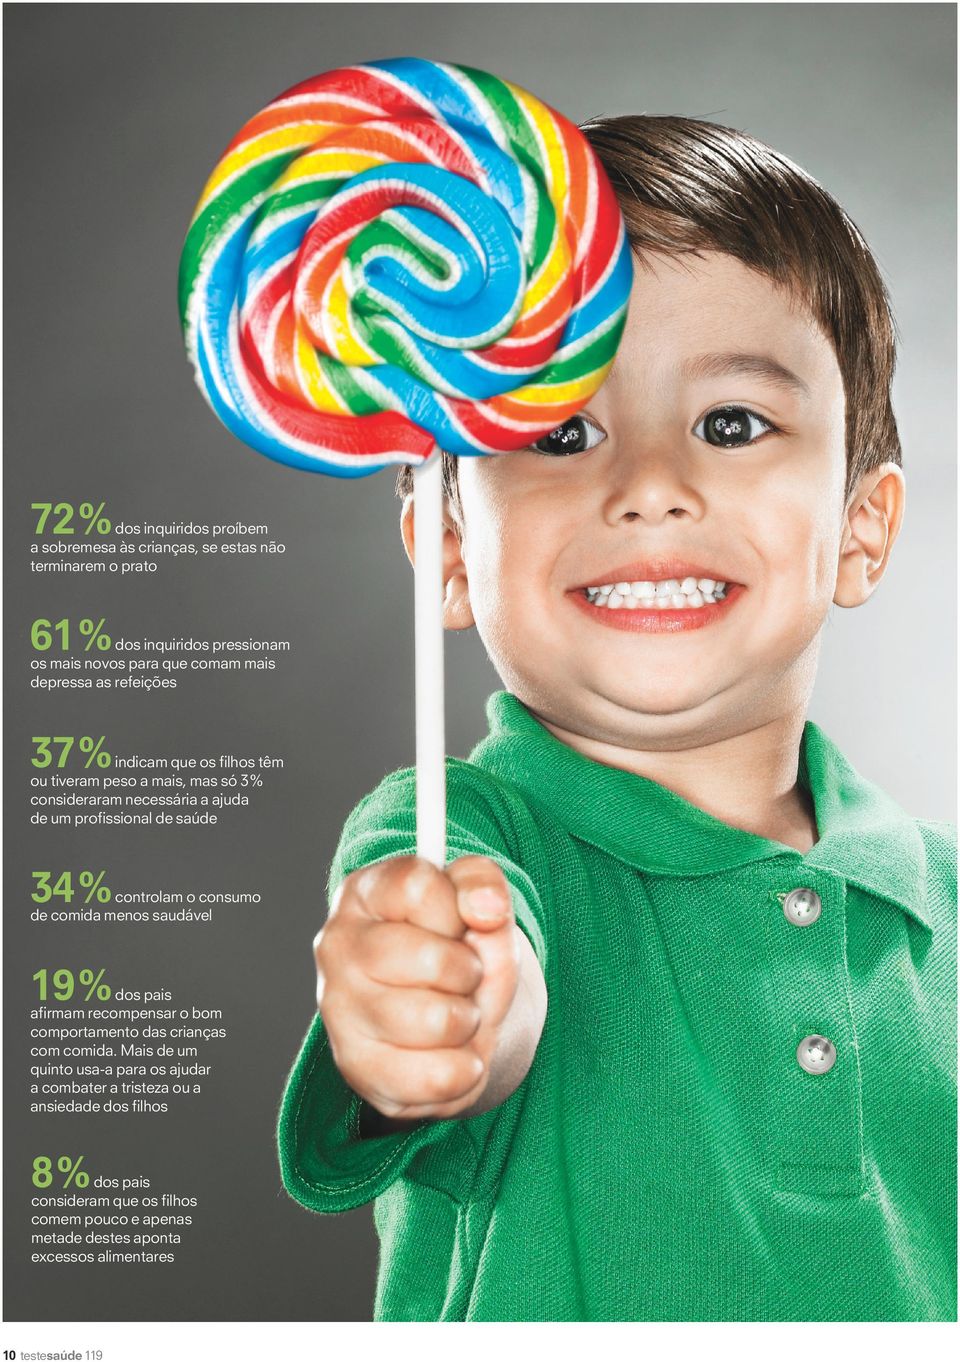 controlam o consumo de comida menos saudável 19% afirmam recompensar o bom comportamento das crianças com comida.